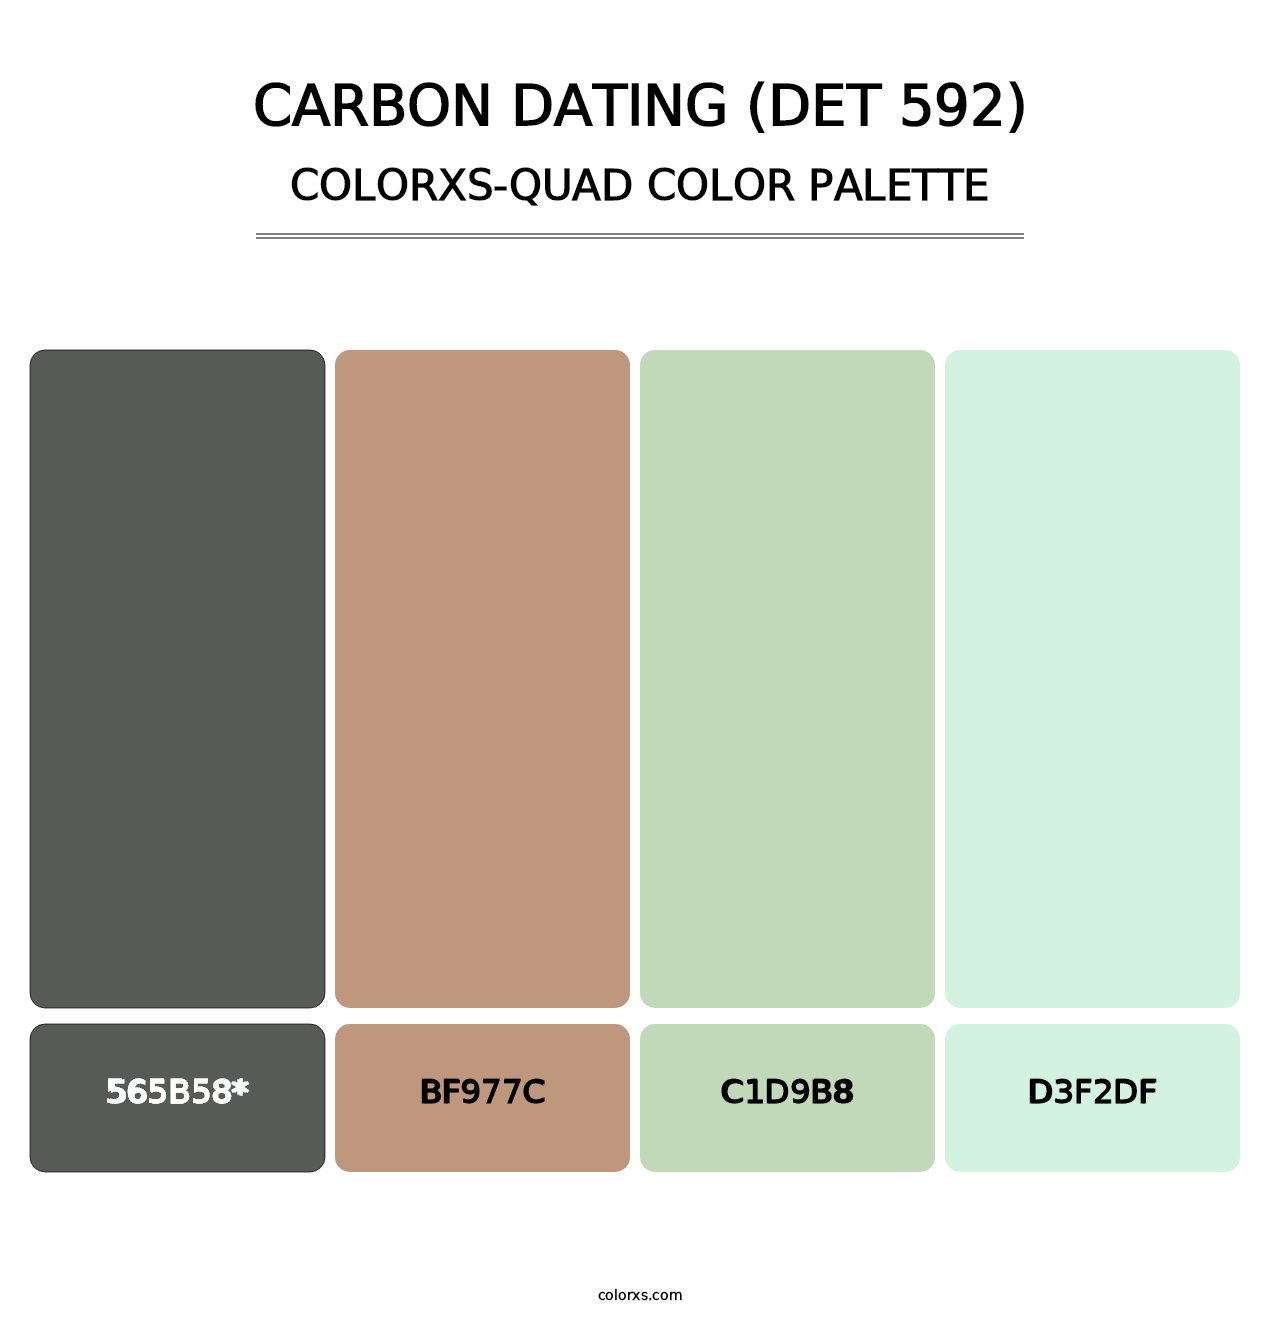 Carbon Dating (DET 592) - Colorxs Quad Palette